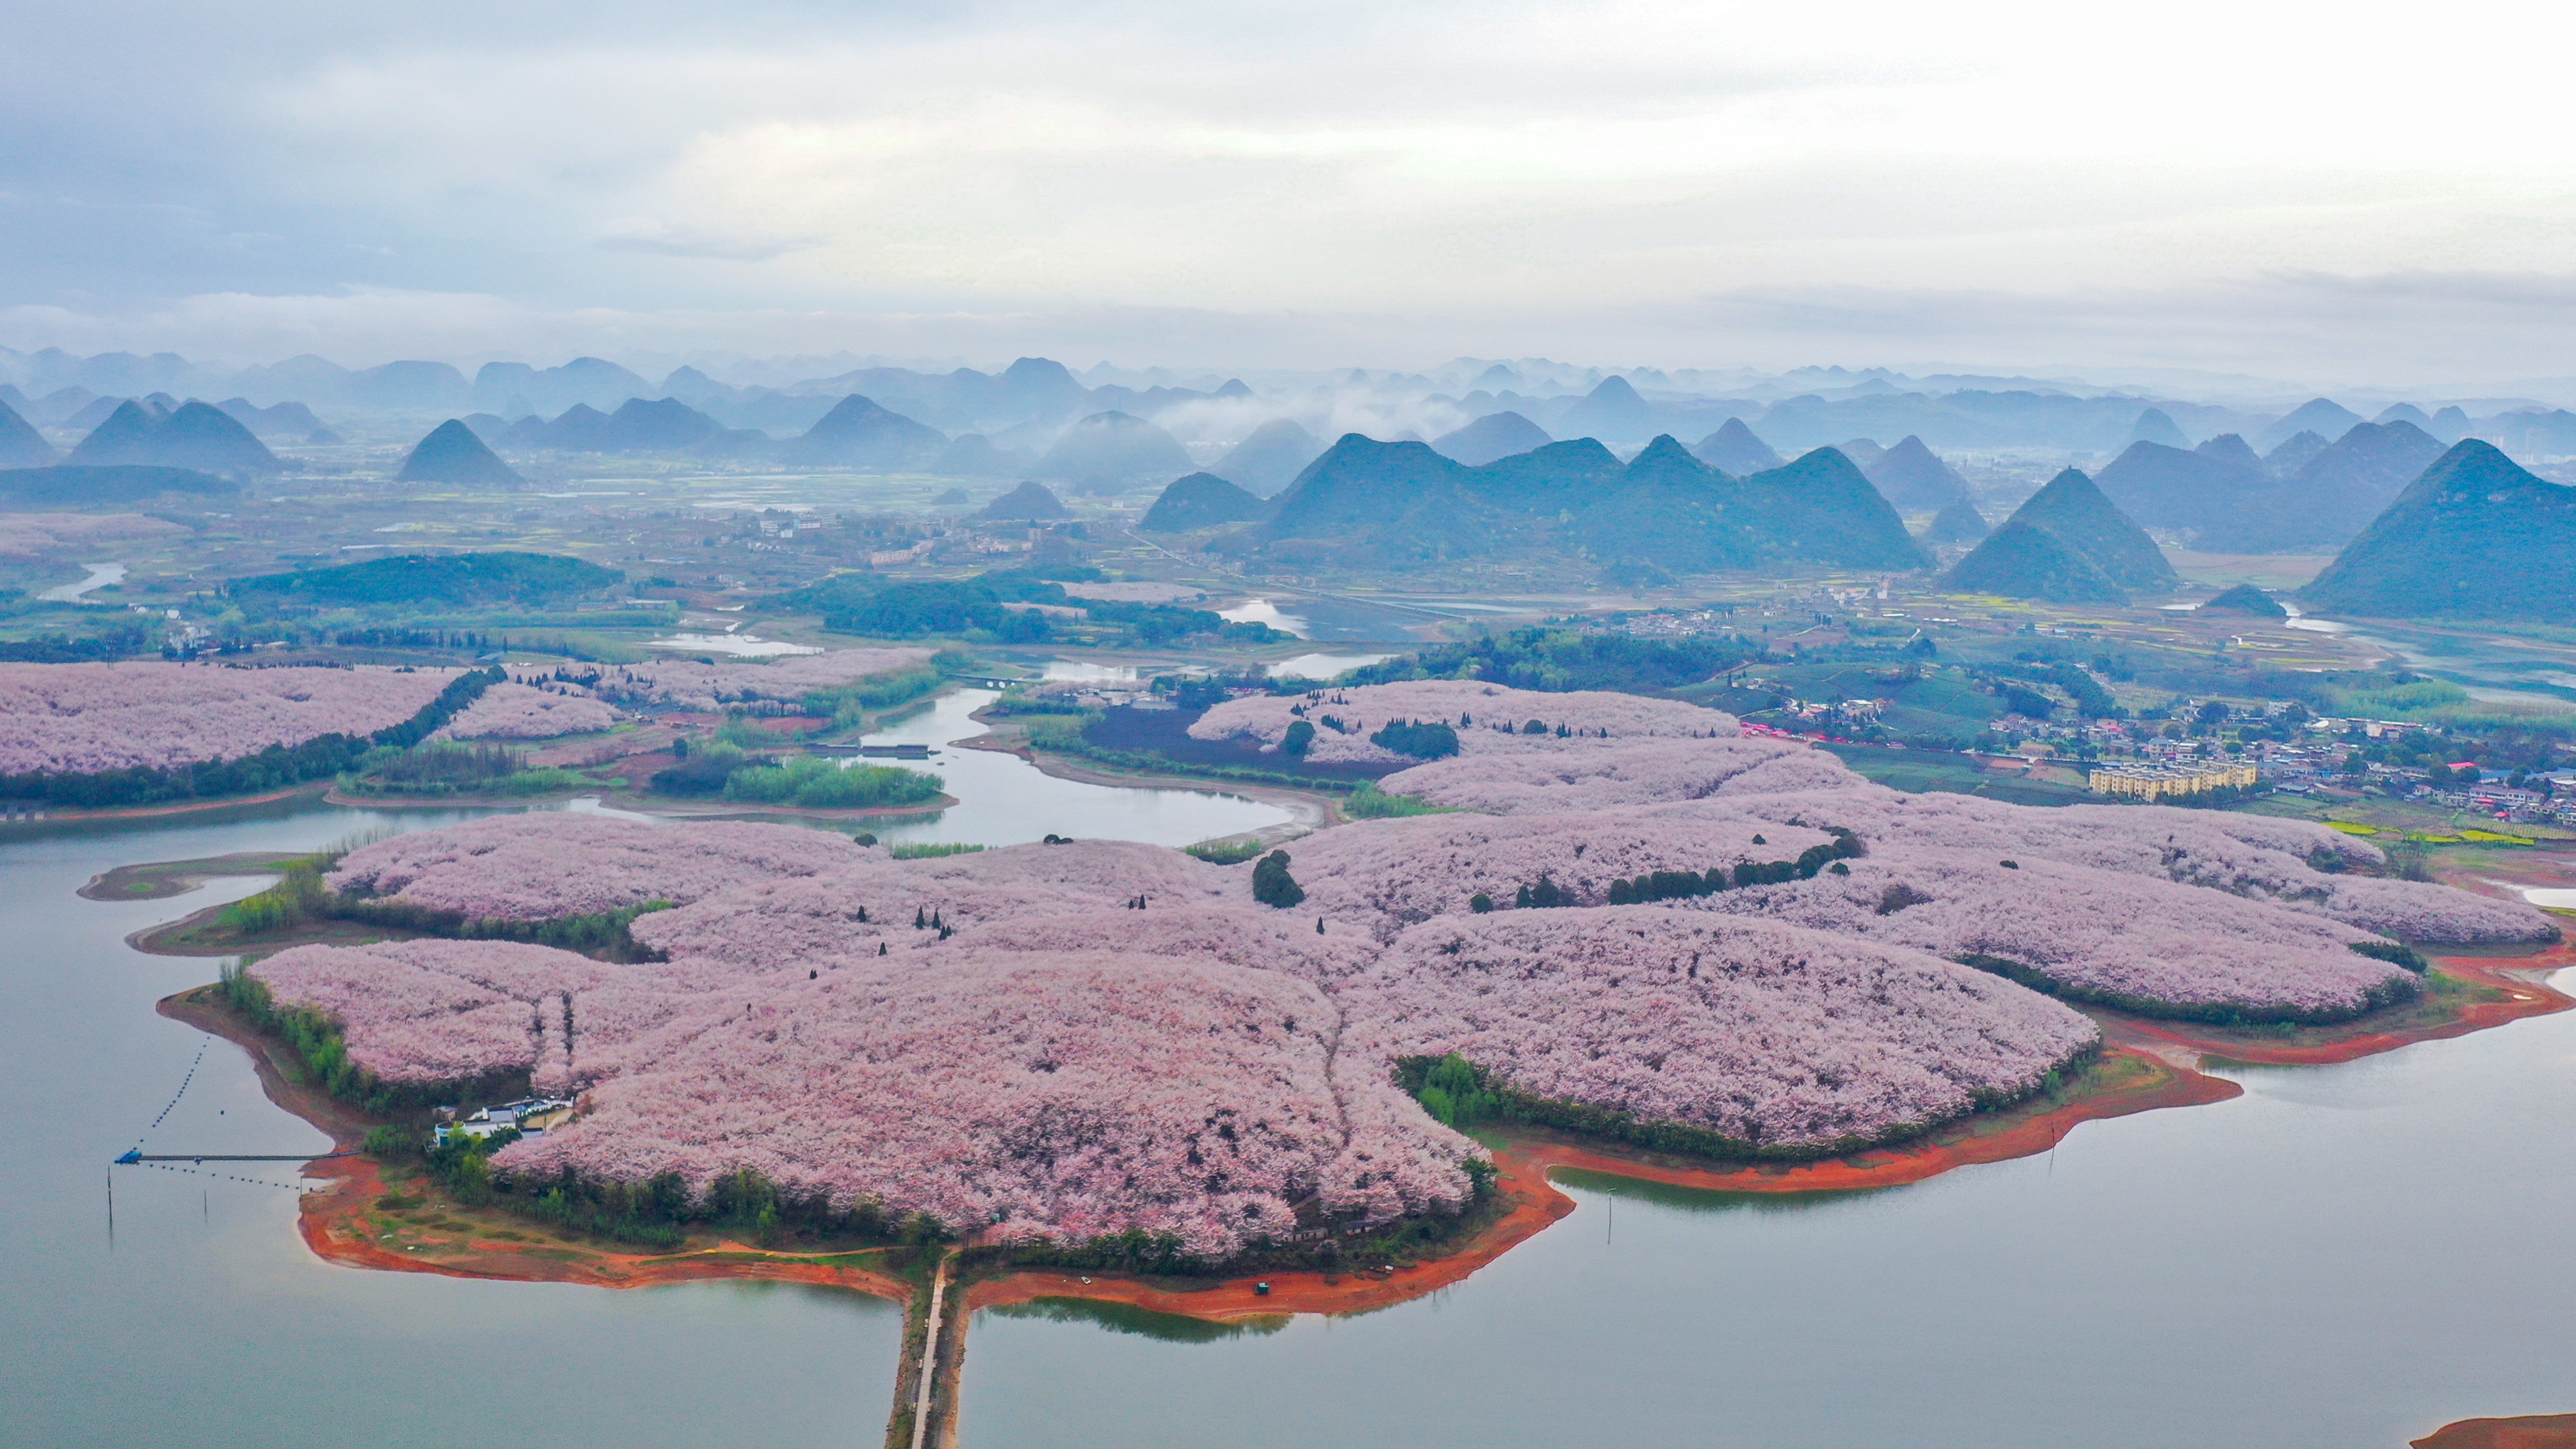 贵州樱花景区图片